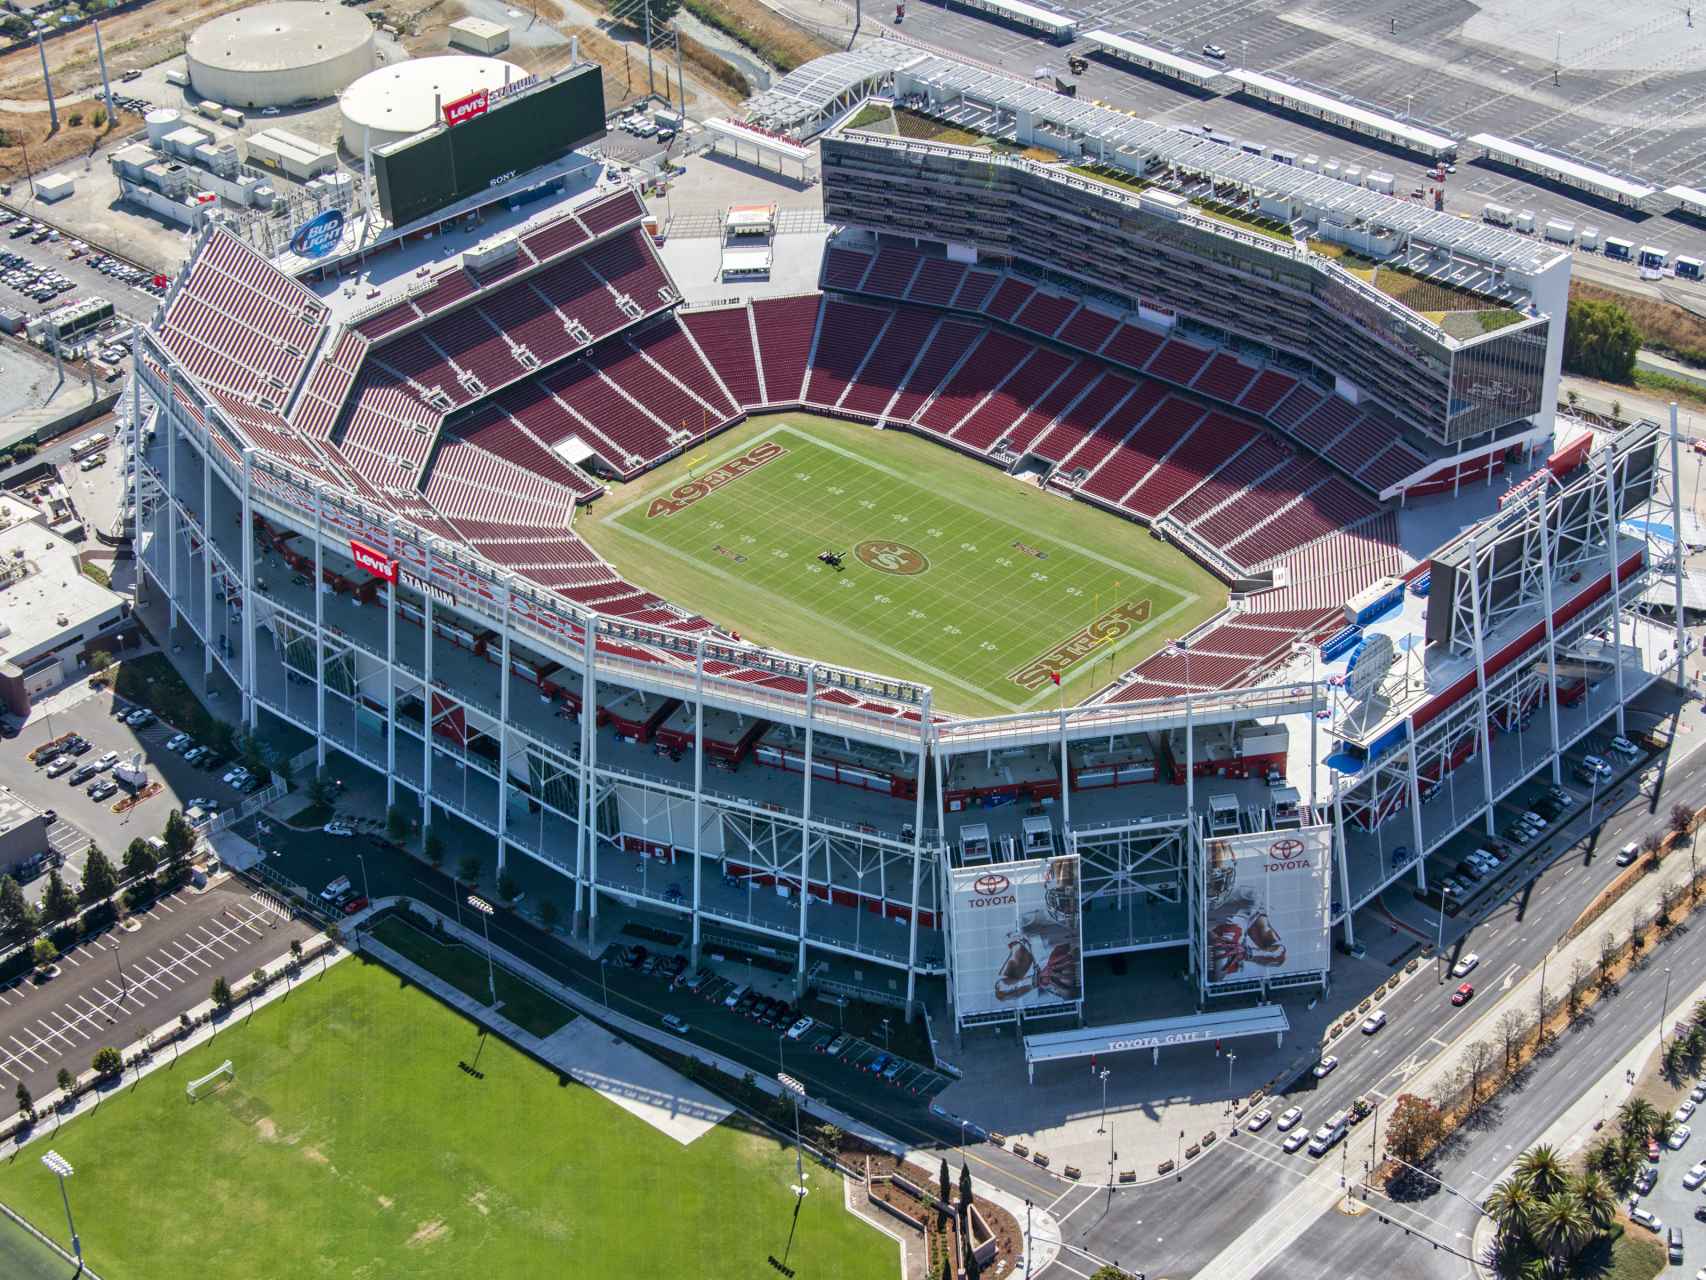 Vista aérea del Lewi’s Stadium, en Santa Clara (California), construido por Turner